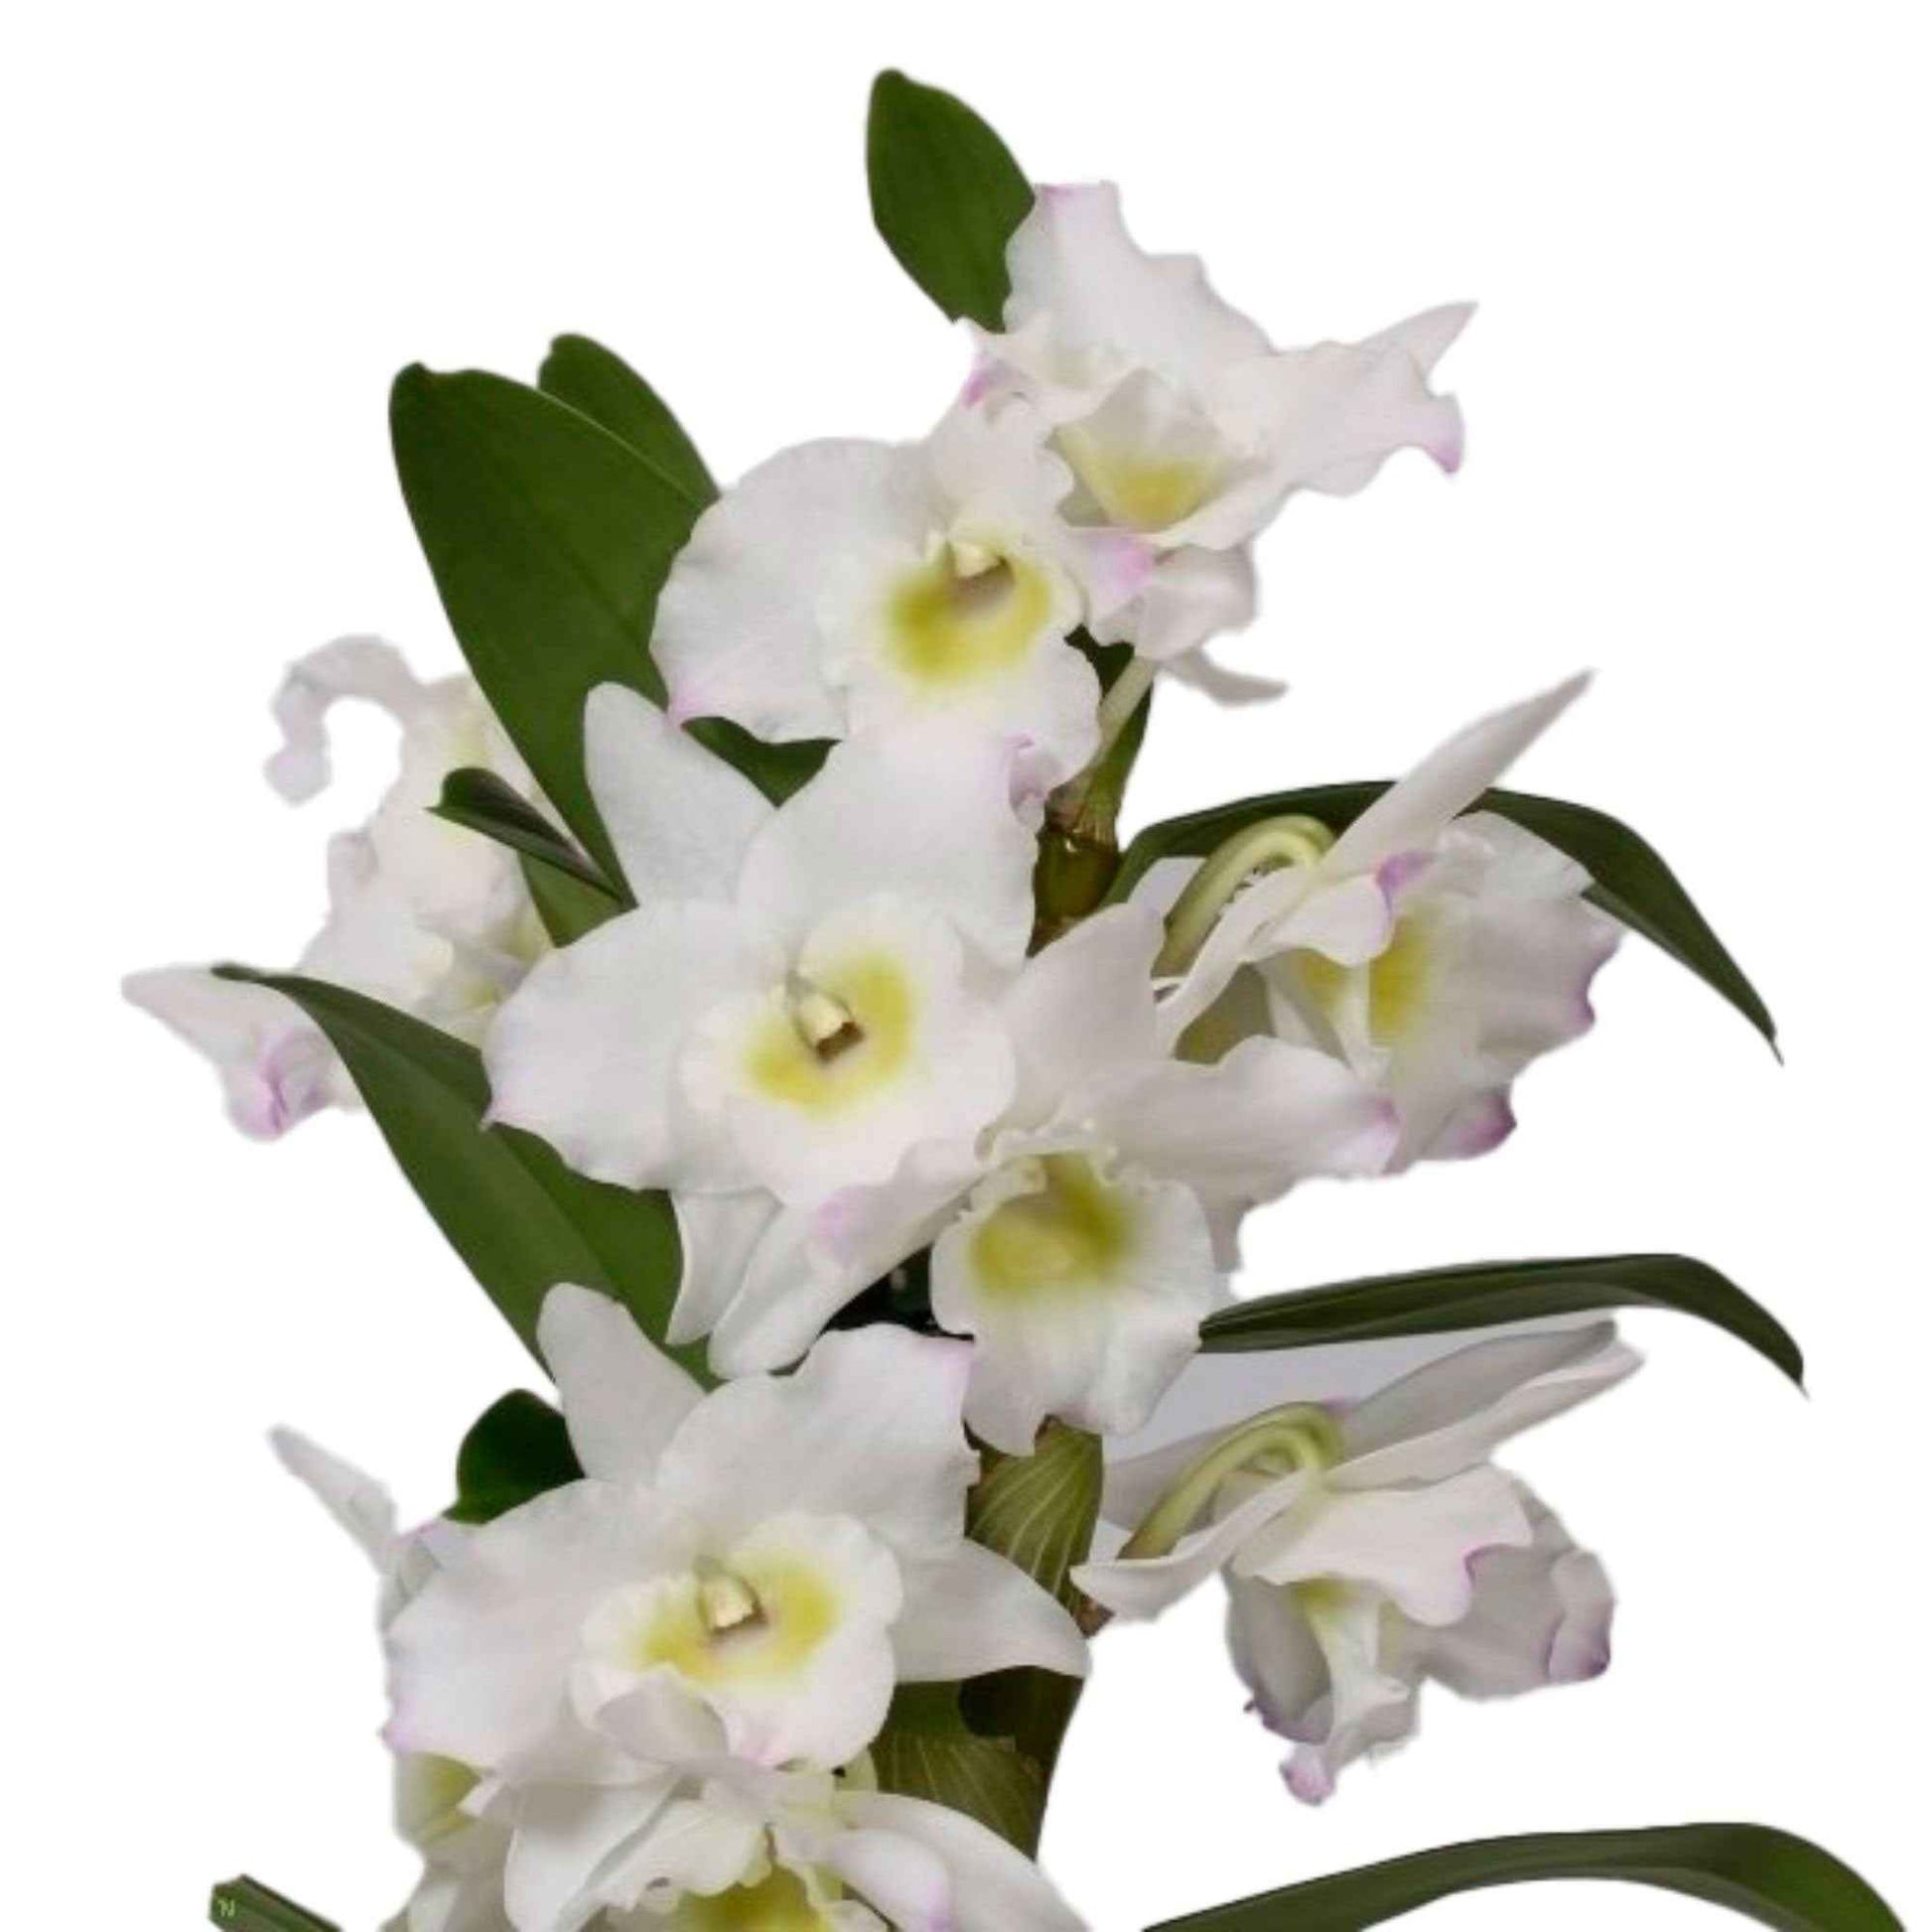 Orchidee Dendrobium 'Apollon' Weiß-Gelb - Nach Trends